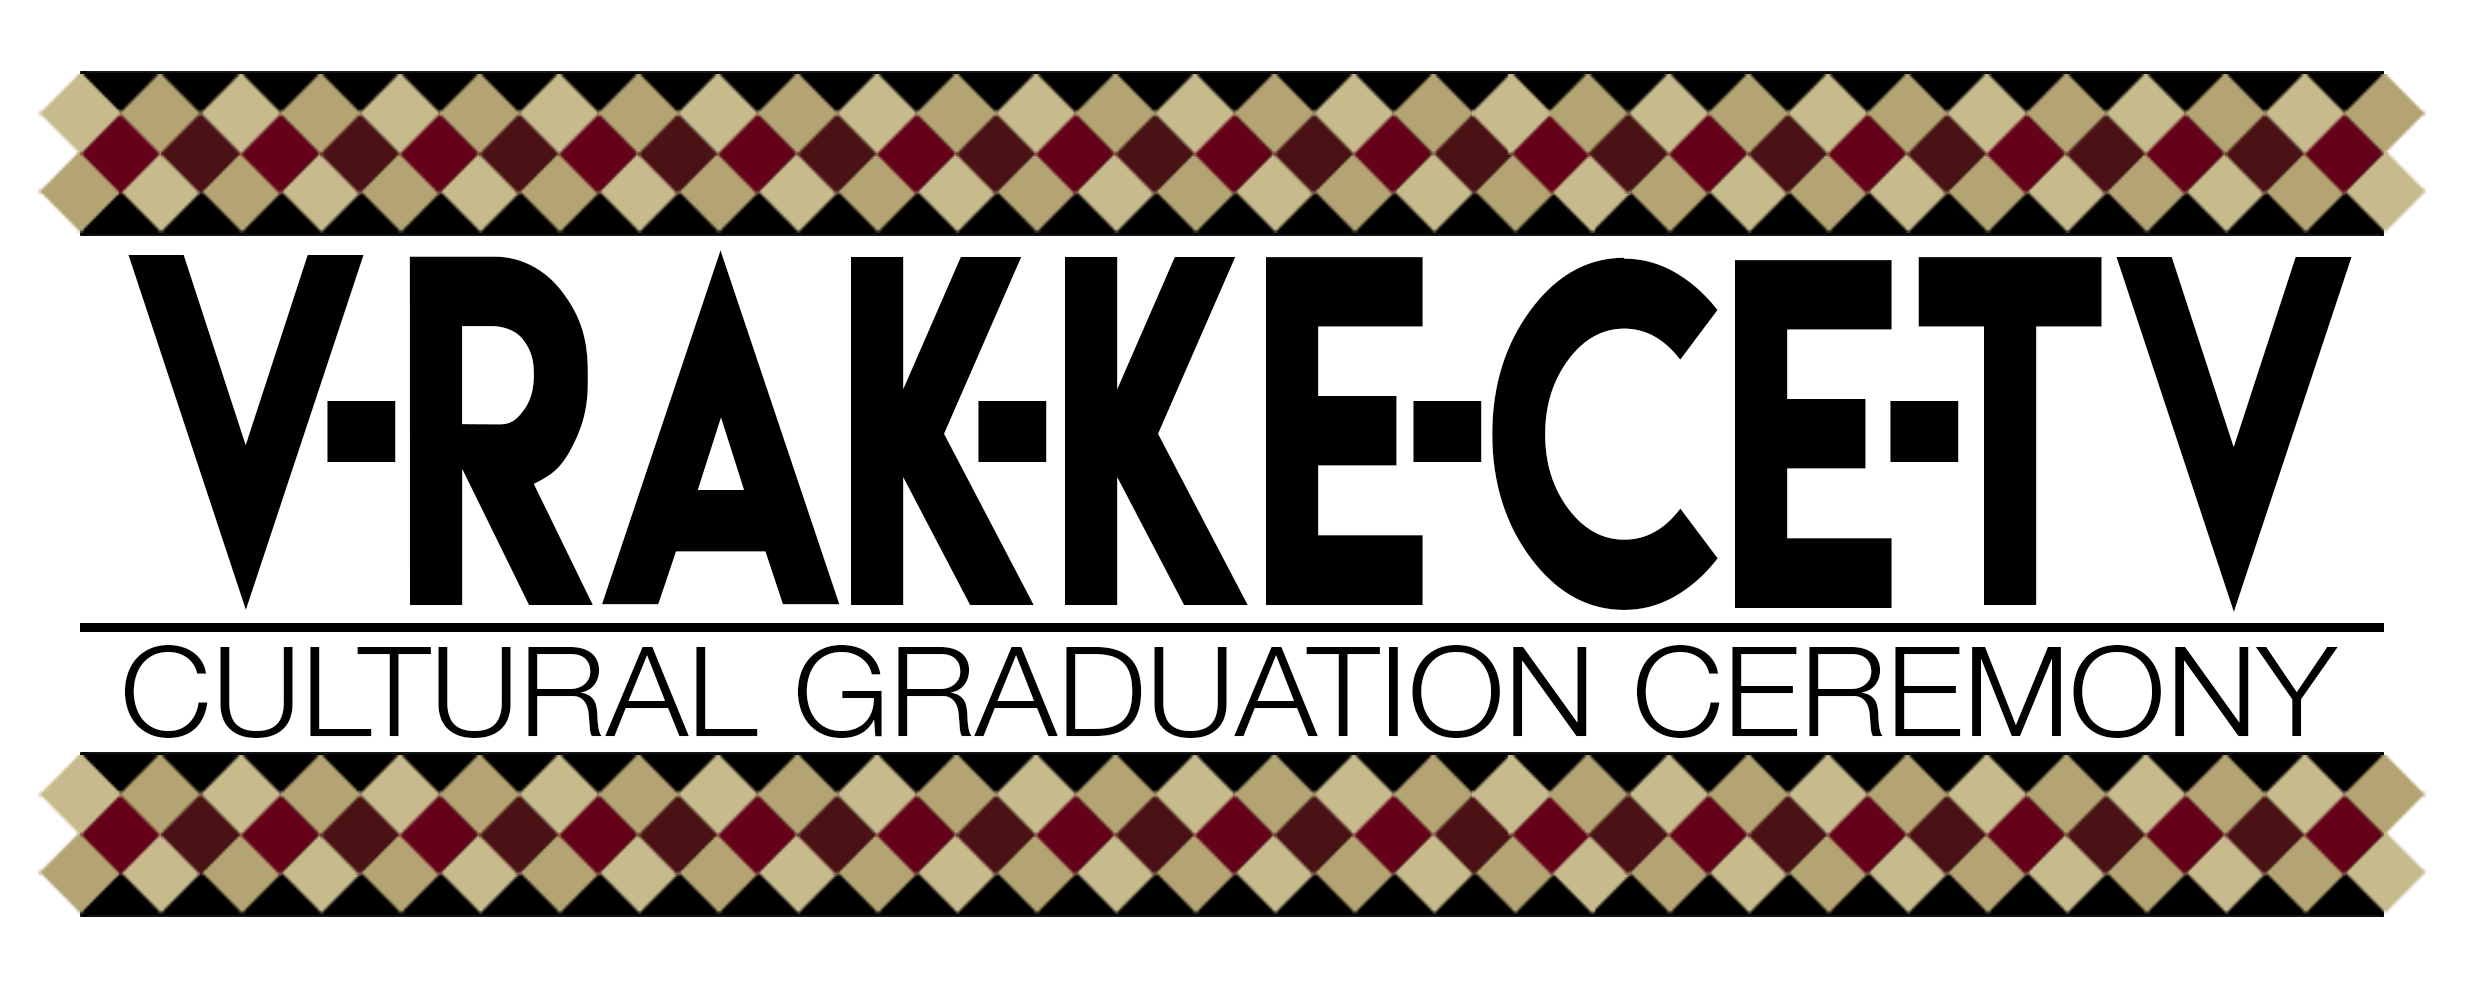 Cultural Graduation Logo.png